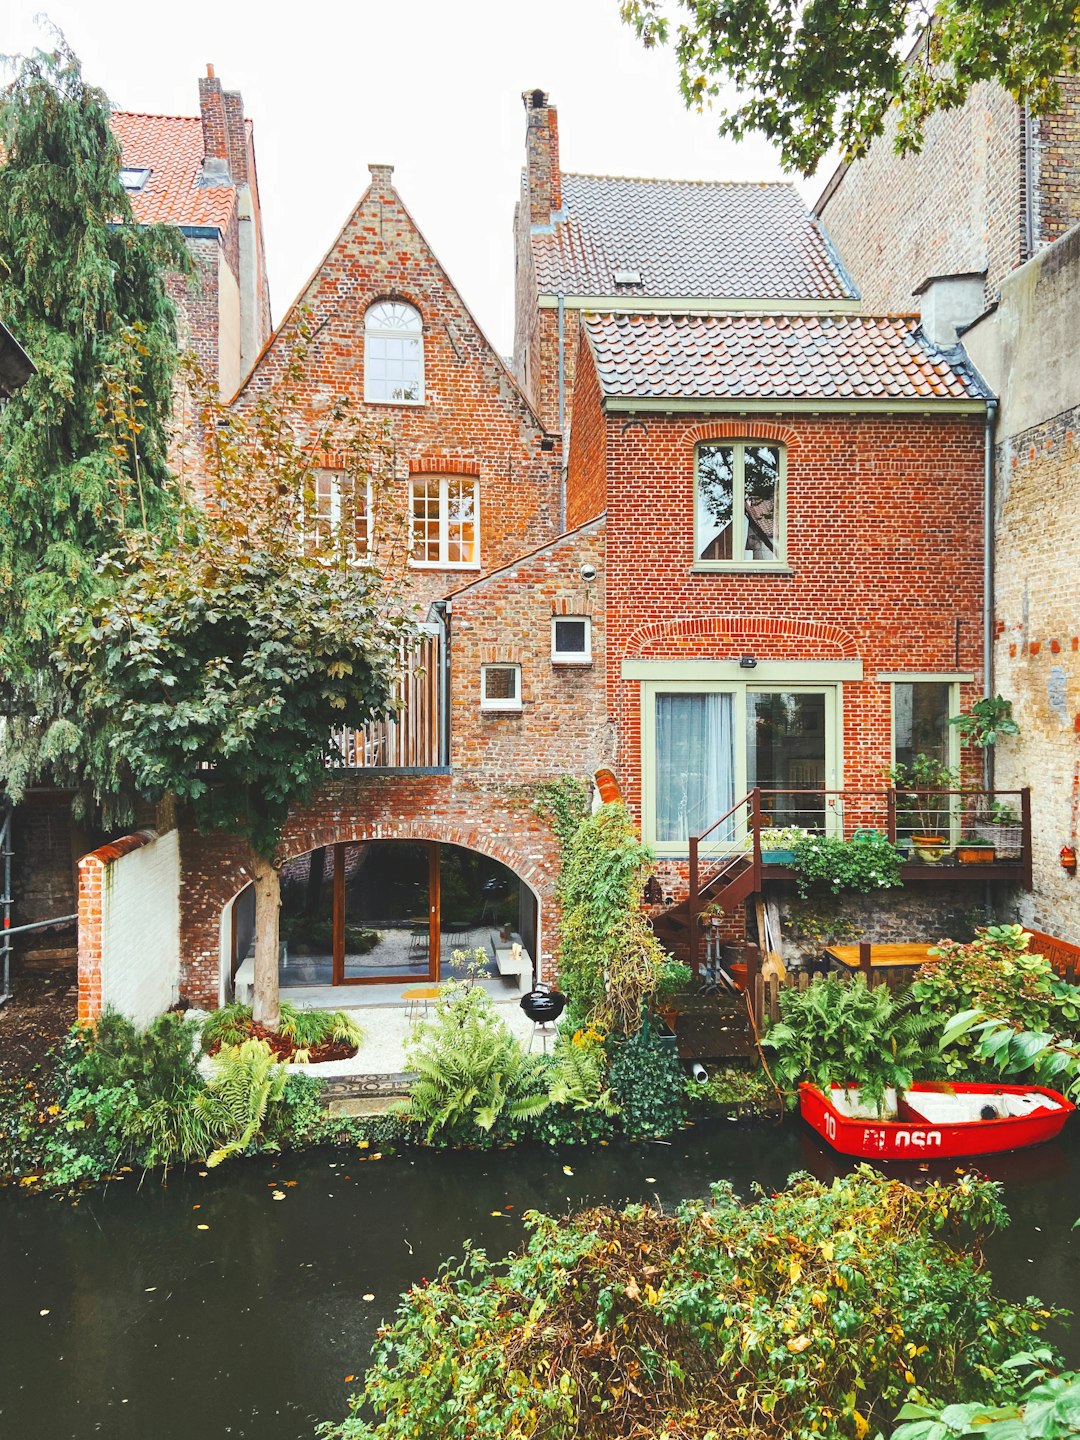 Waterway photo spot Bruges Knokke-Heist